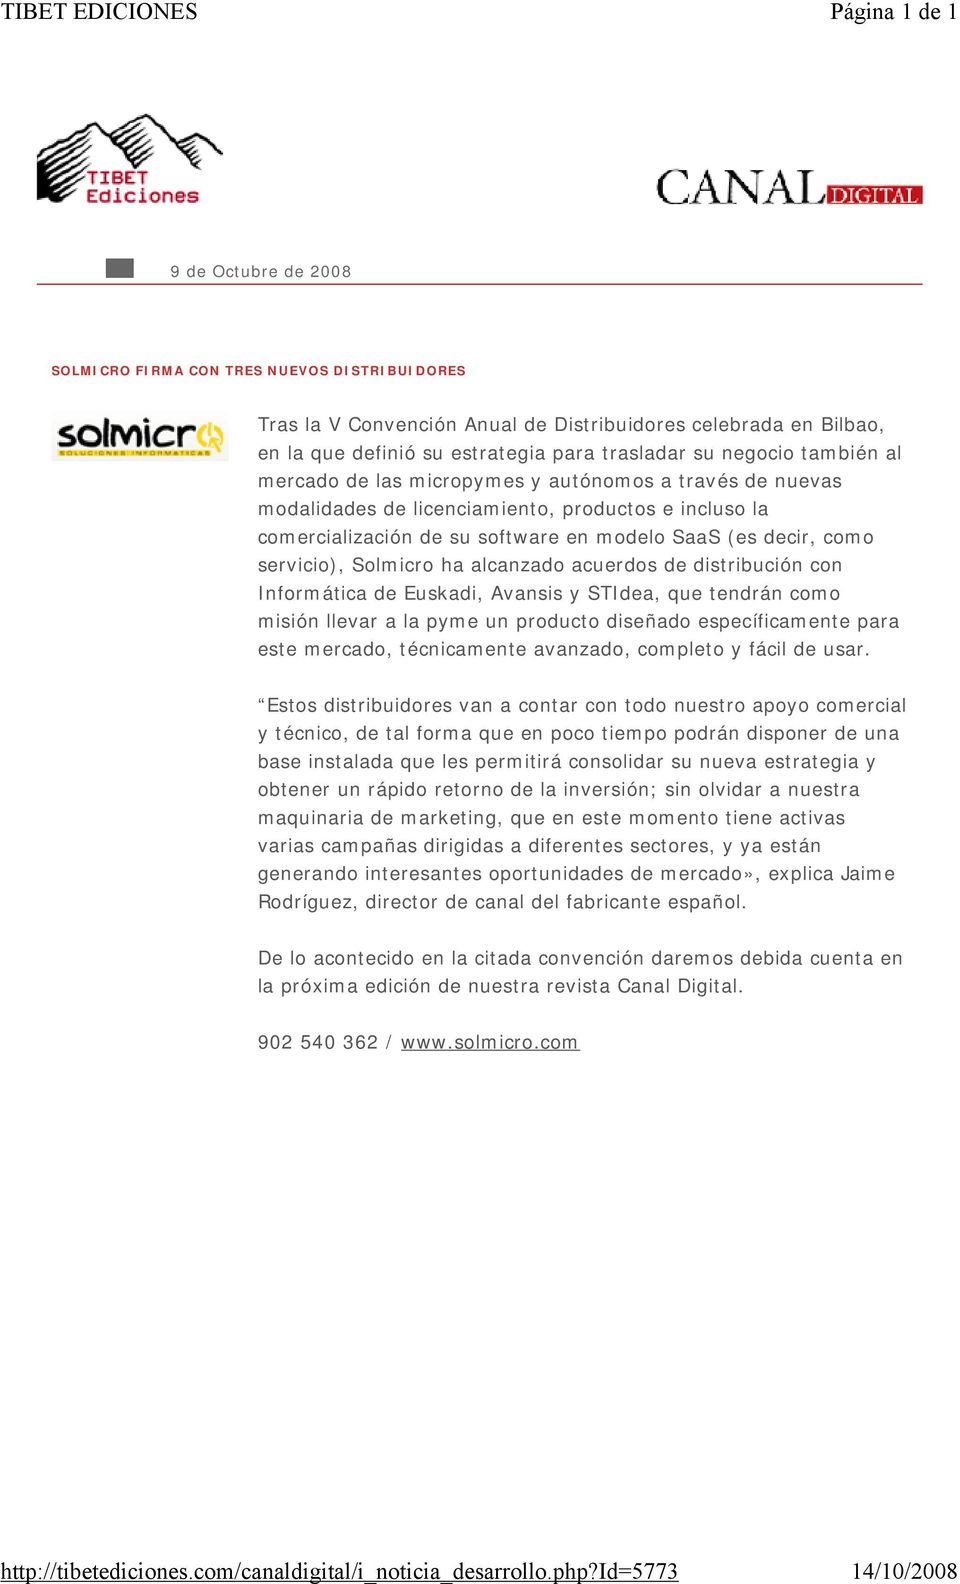 decir, como servicio), Solmicro ha alcanzado acuerdos de distribución con Informática de Euskadi, Avansis y STIdea, que tendrán como misión llevar a la pyme un producto diseñado específicamente para